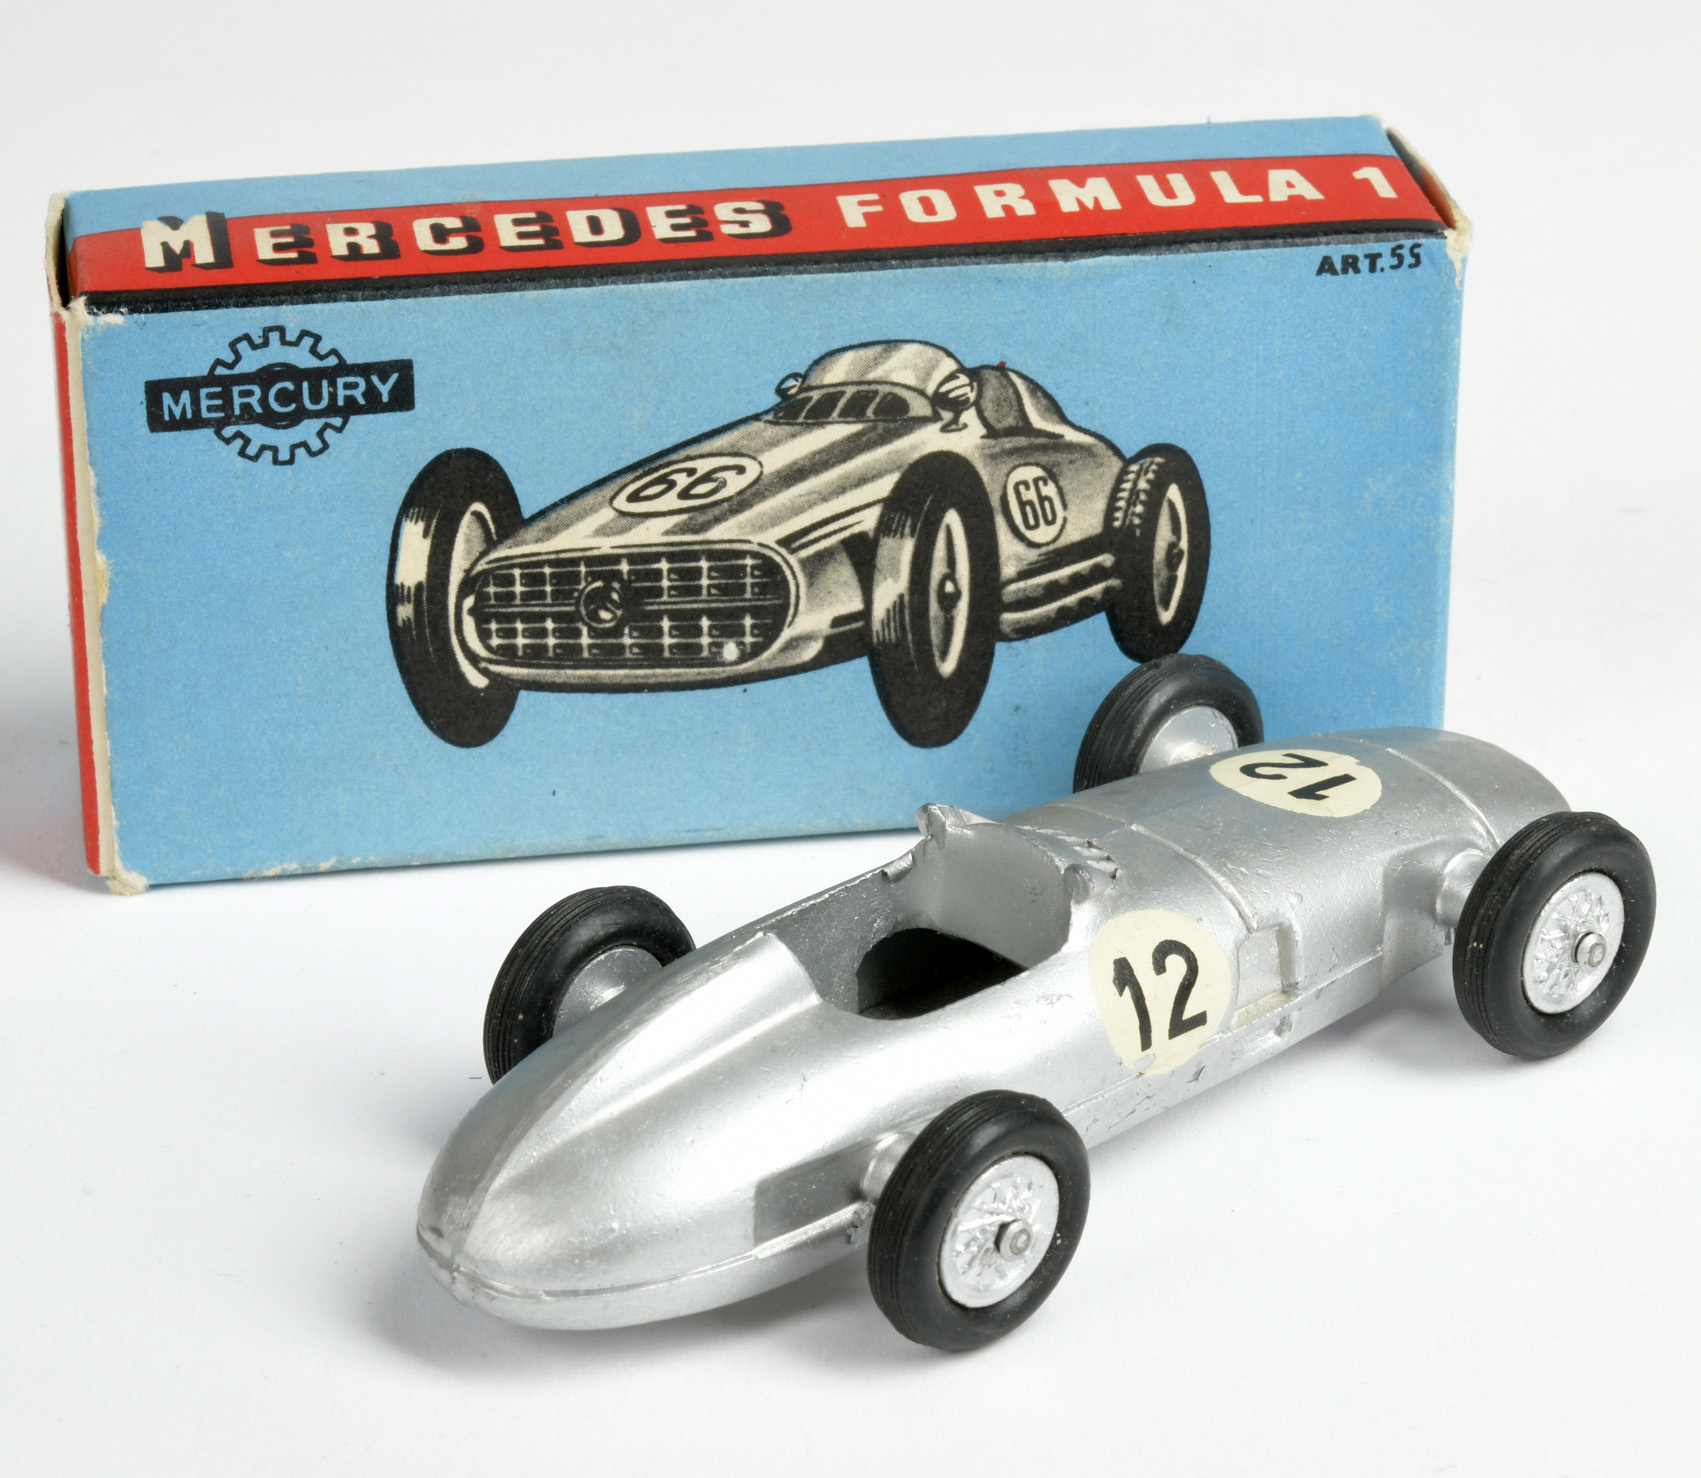 Mercury, Mercedes Formula 1 racing car, Italy, 1:43, diecast, box C 1, C 1- - Image 2 of 2